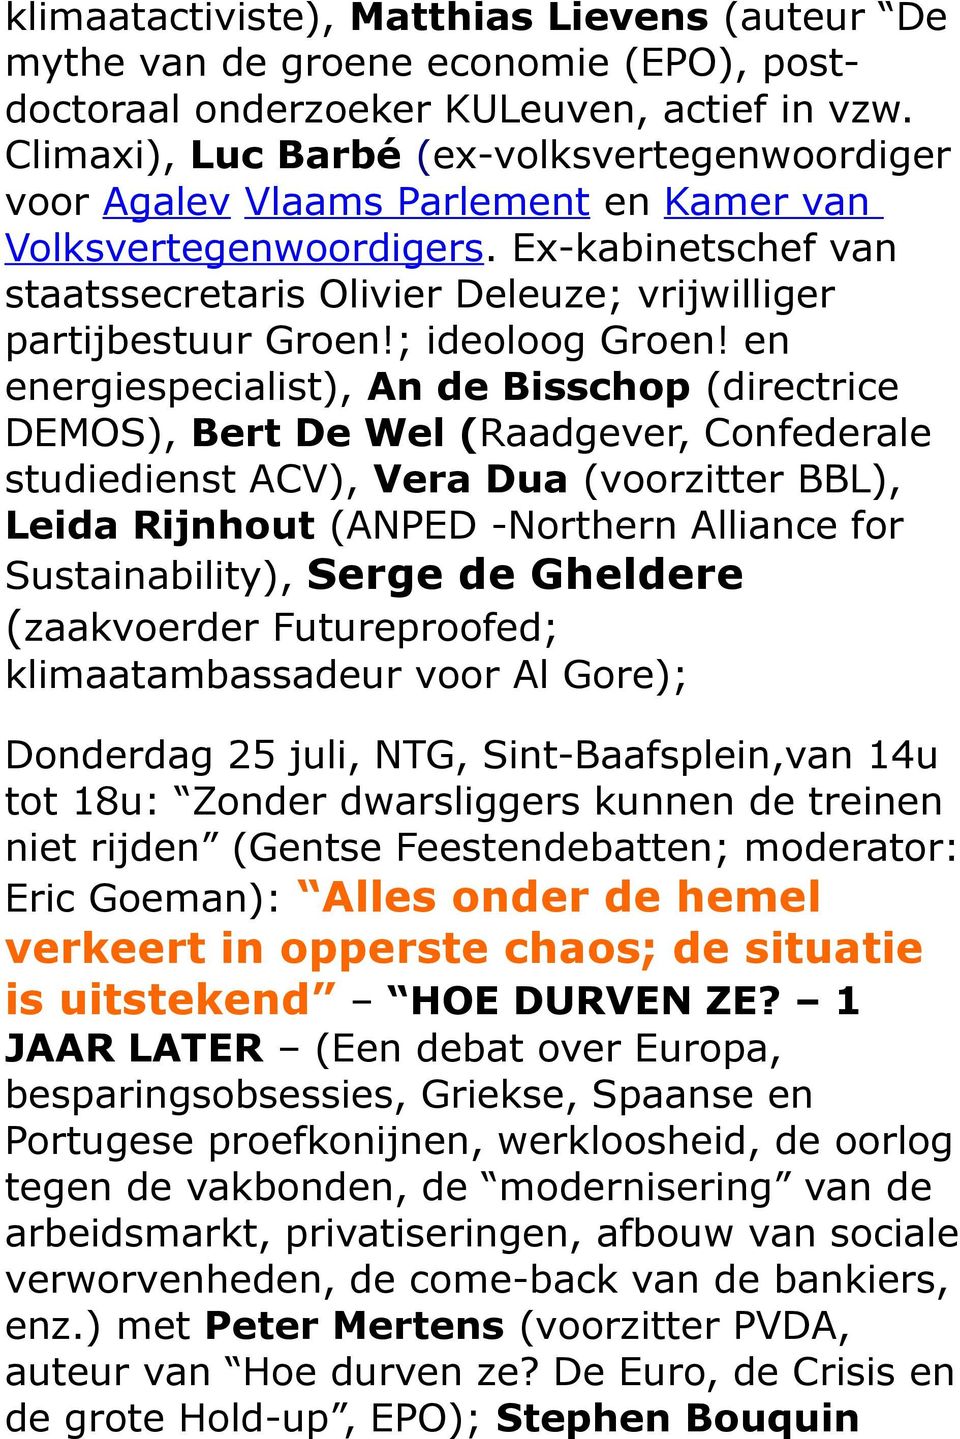 Ex-kabinetschef van staatssecretaris Olivier Deleuze; vrijwilliger partijbestuur Groen!; ideoloog Groen!